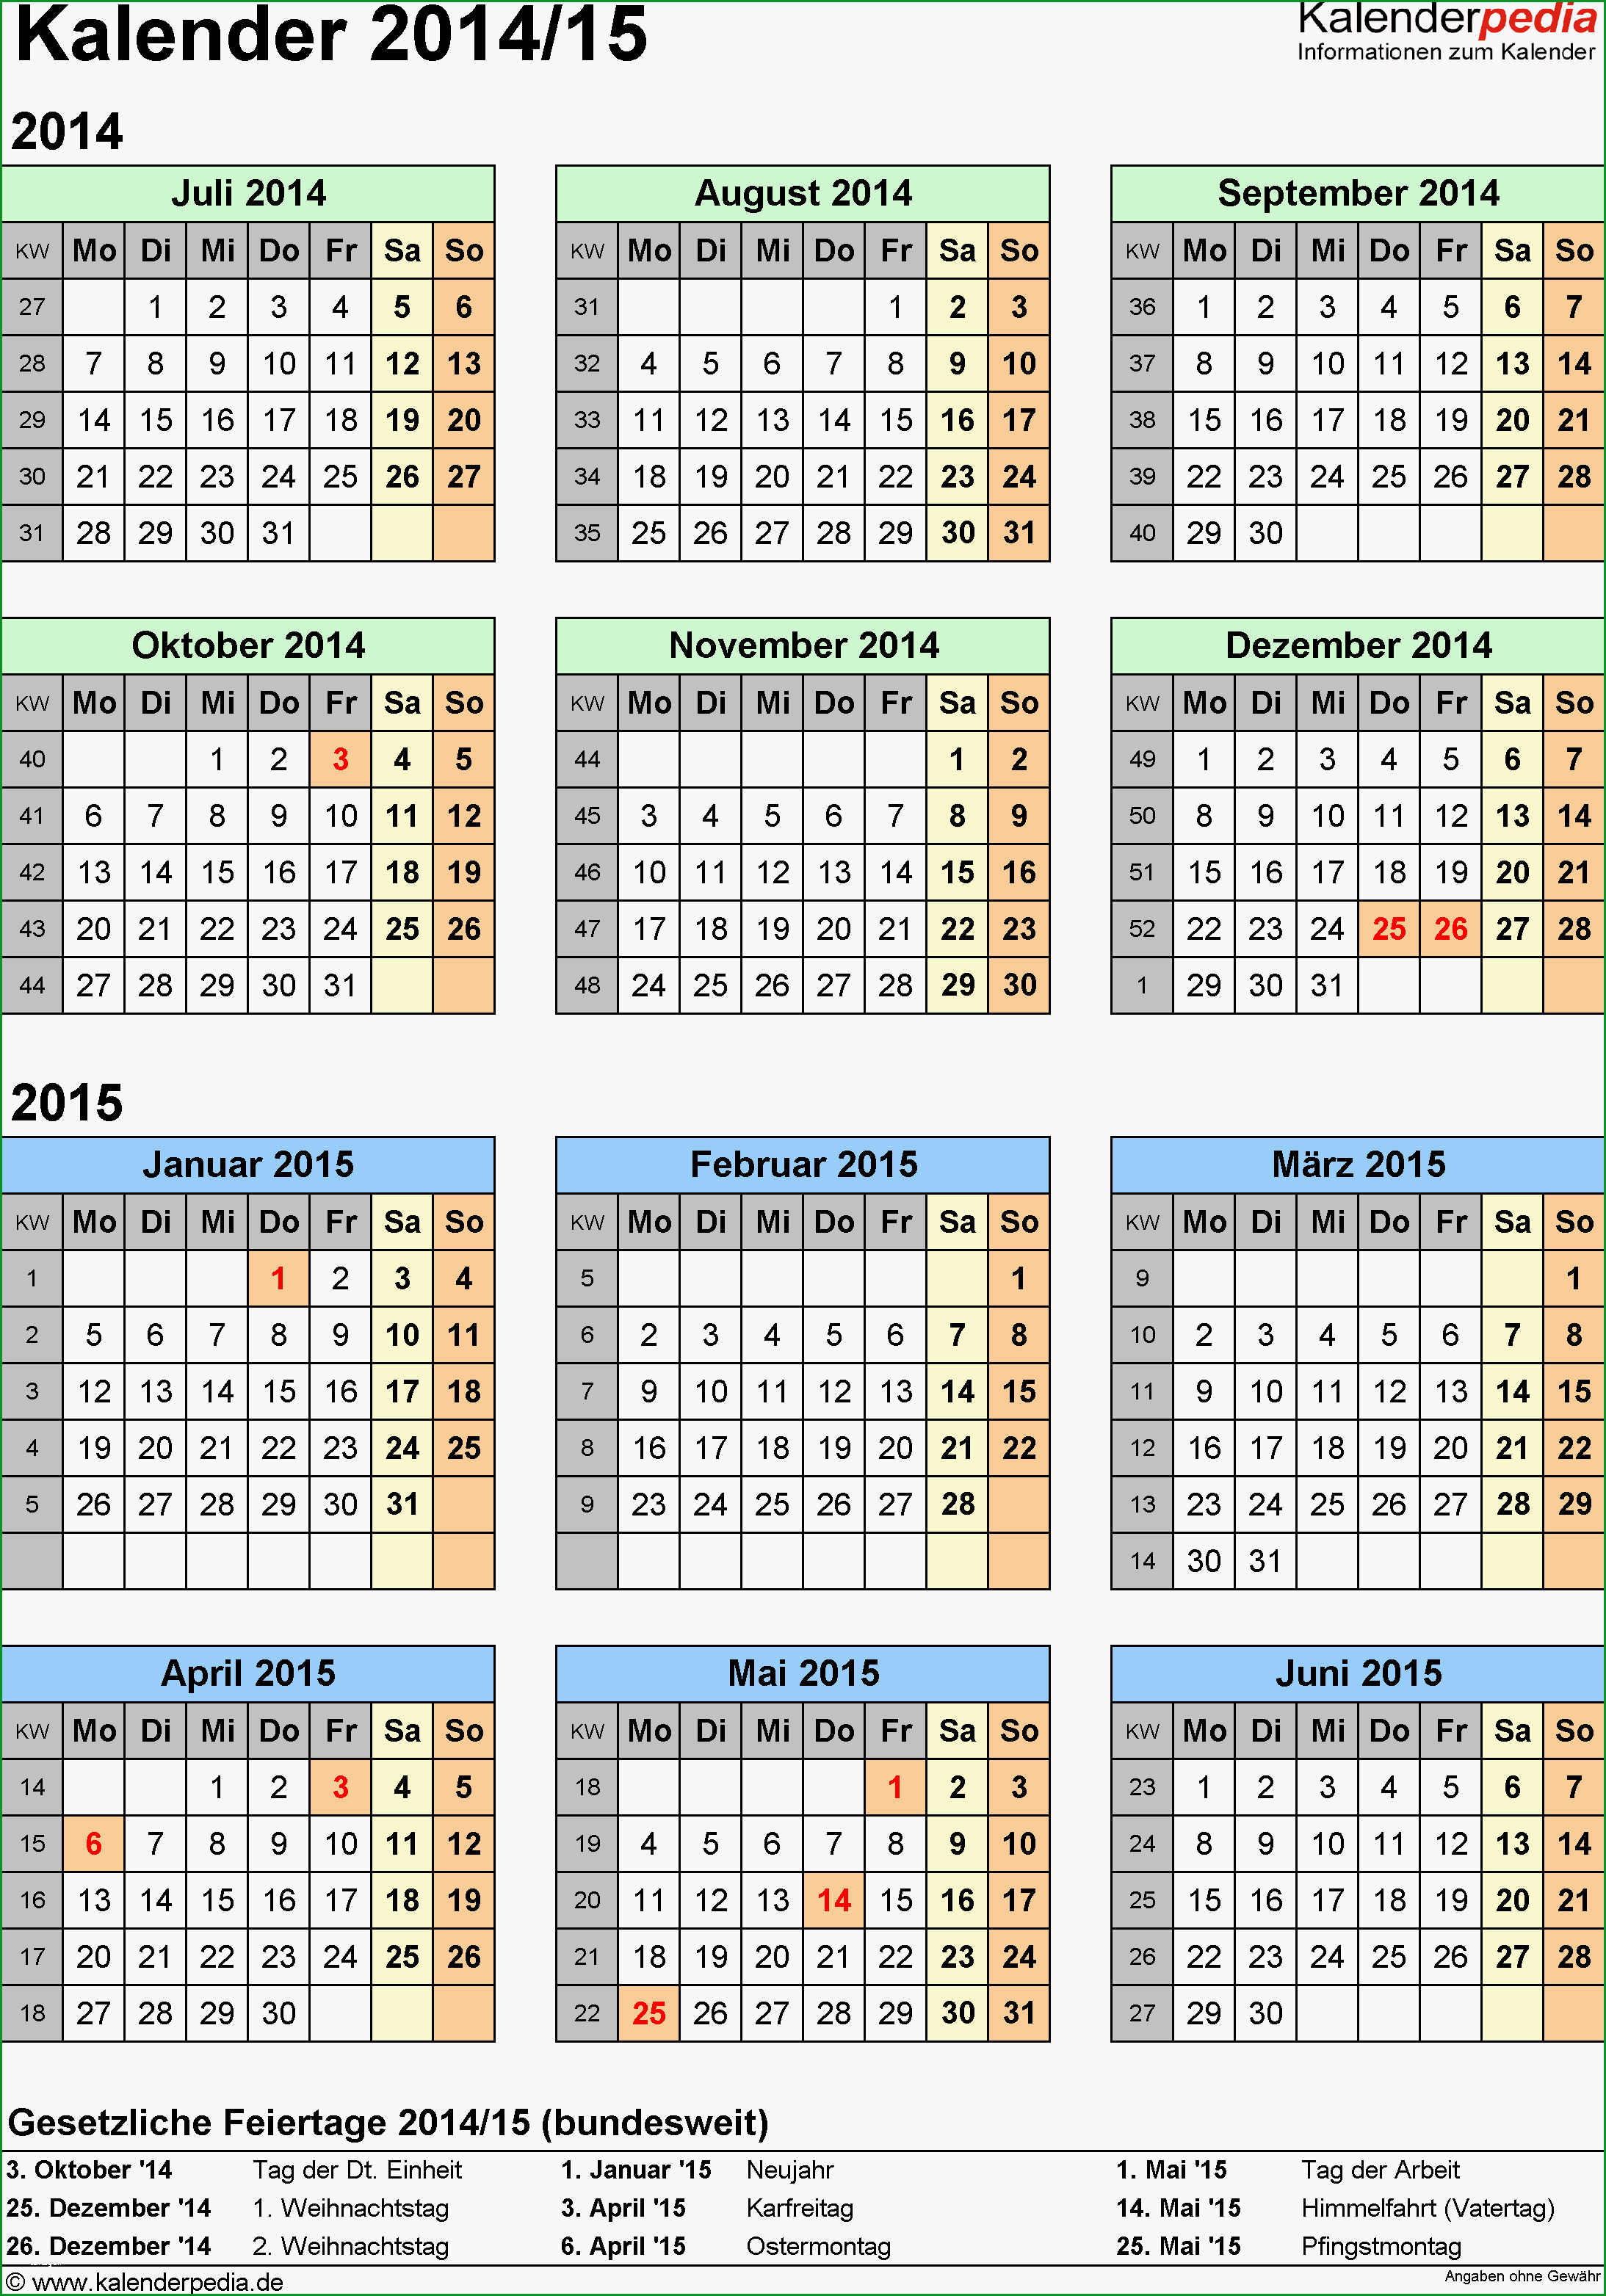 halbjahreskalender 2014 2015 excel vorlagen